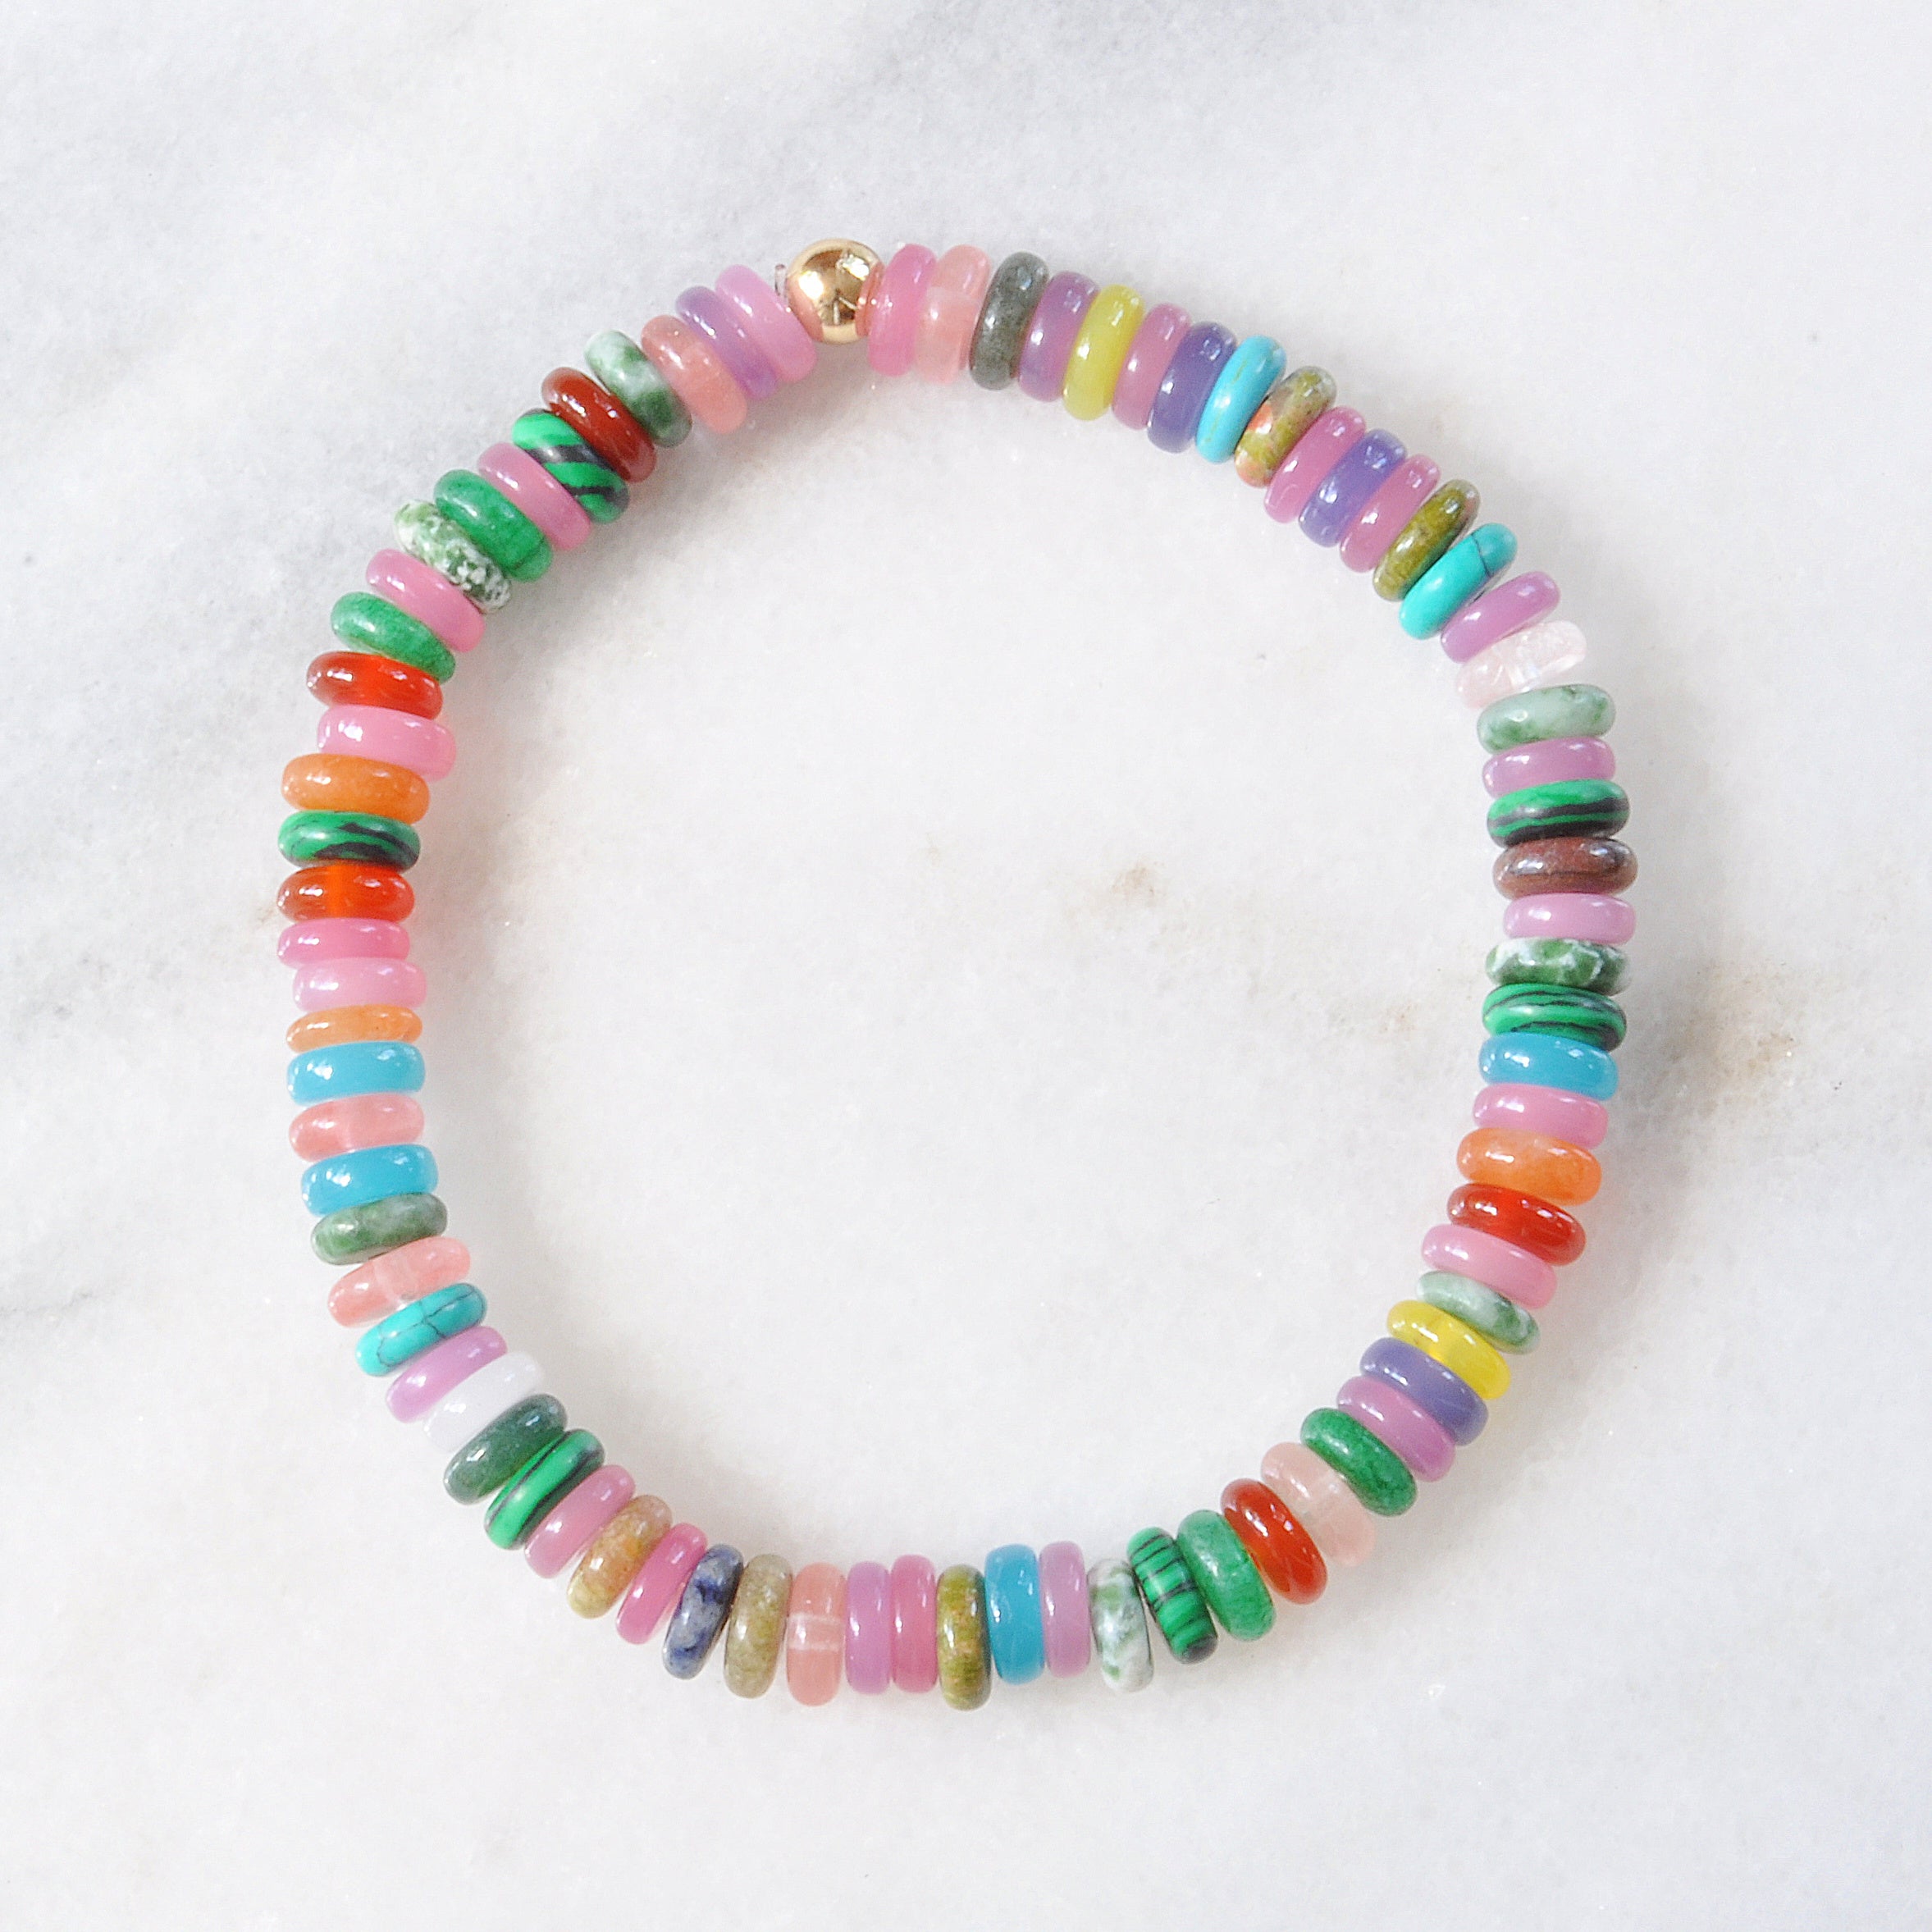 Candy Bracelet Rainbow Mixed Stones